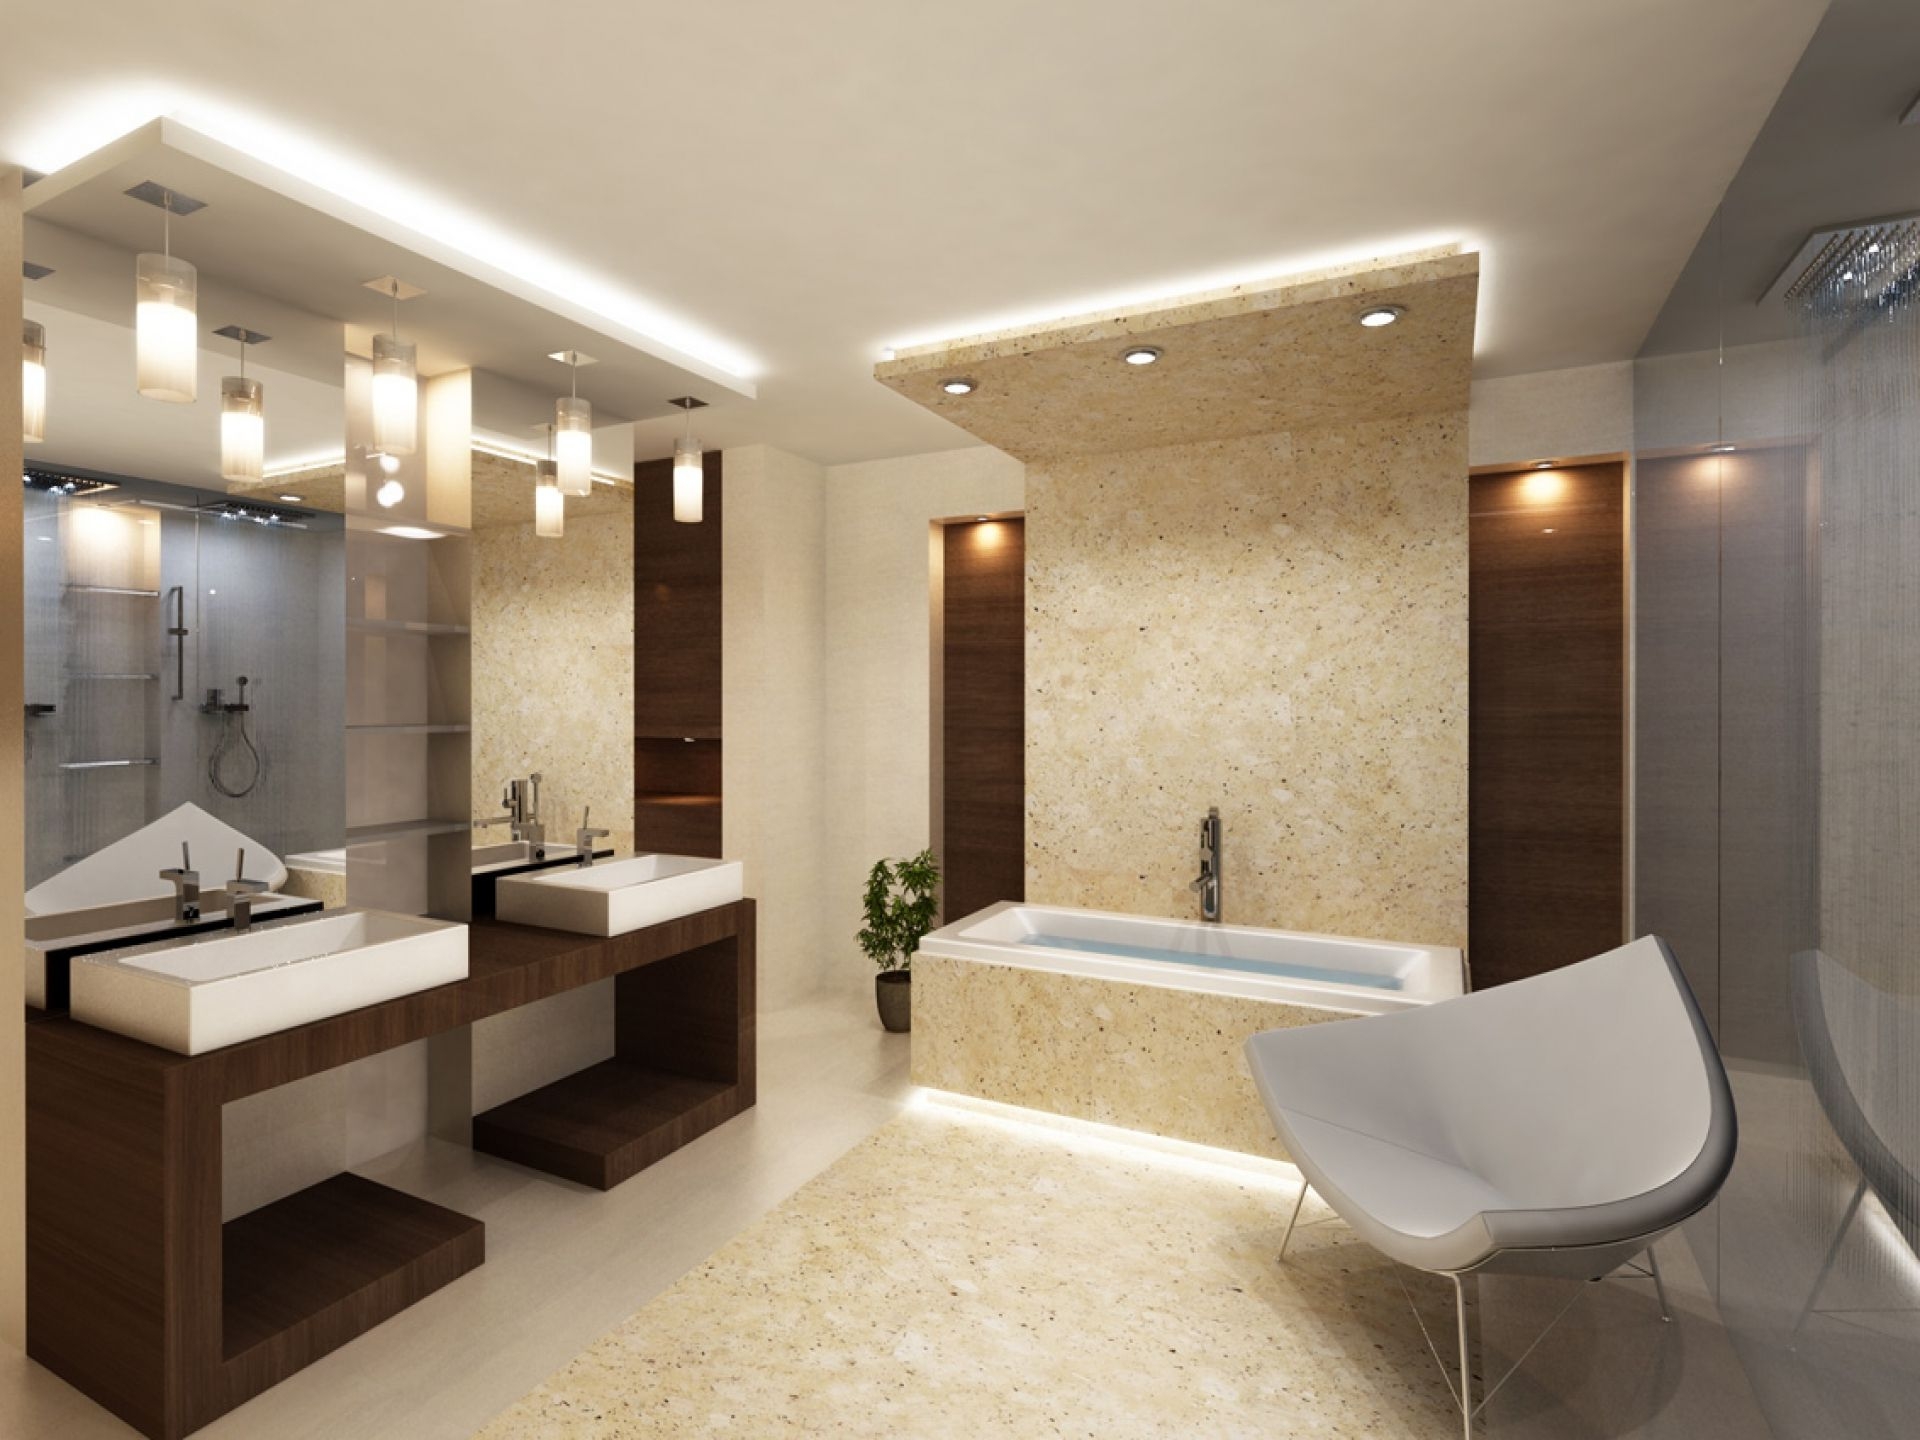 Освещение ванной комнаты особенности и решения >thisisjustarandomplaceholder< Освещение ванной комнаты особенности и решения